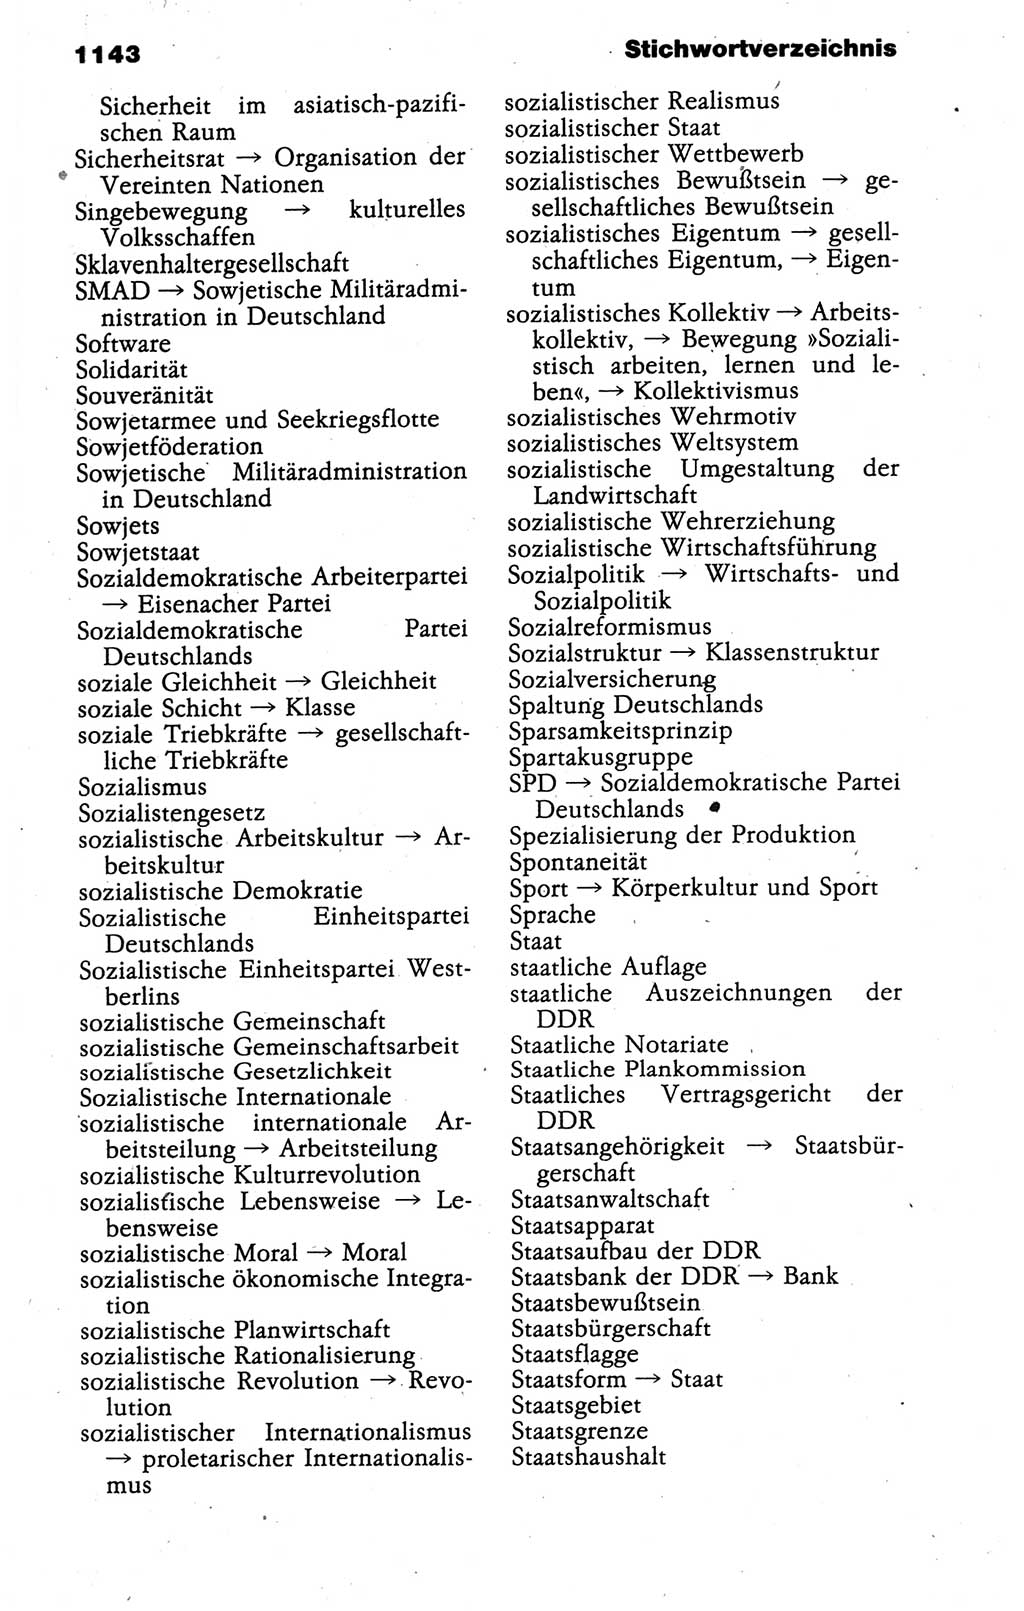 Kleines politisches Wörterbuch [Deutsche Demokratische Republik (DDR)] 1988, Seite 1143 (Kl. pol. Wb. DDR 1988, S. 1143)